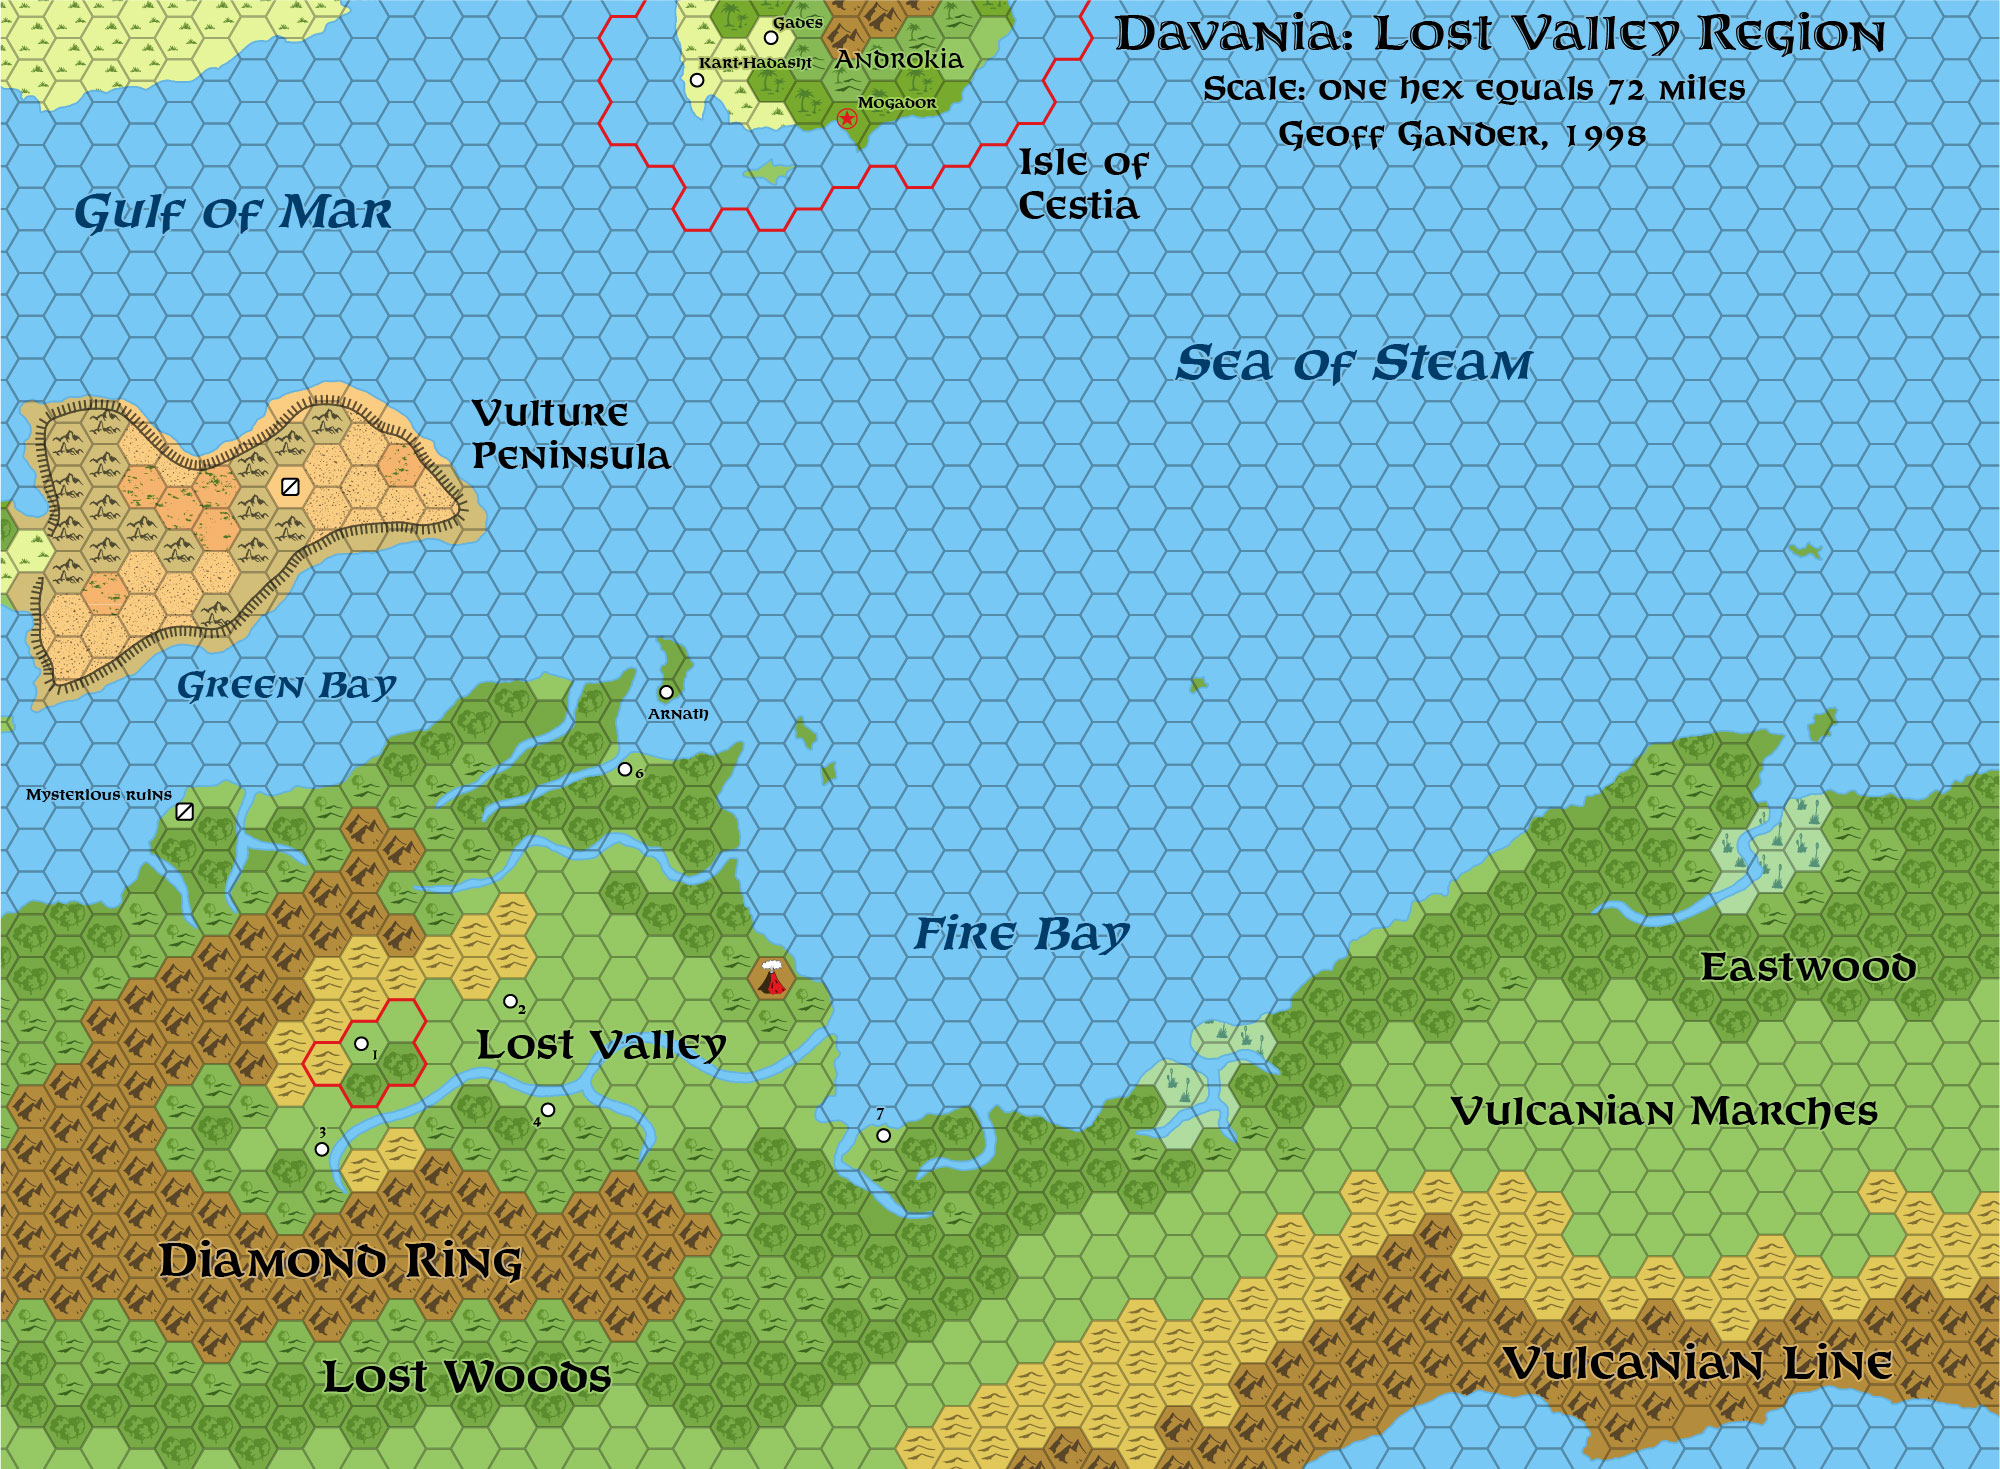 Standardised replica of Geoff Gander’s Davania: Lost Valley Region, 72 miles per hex